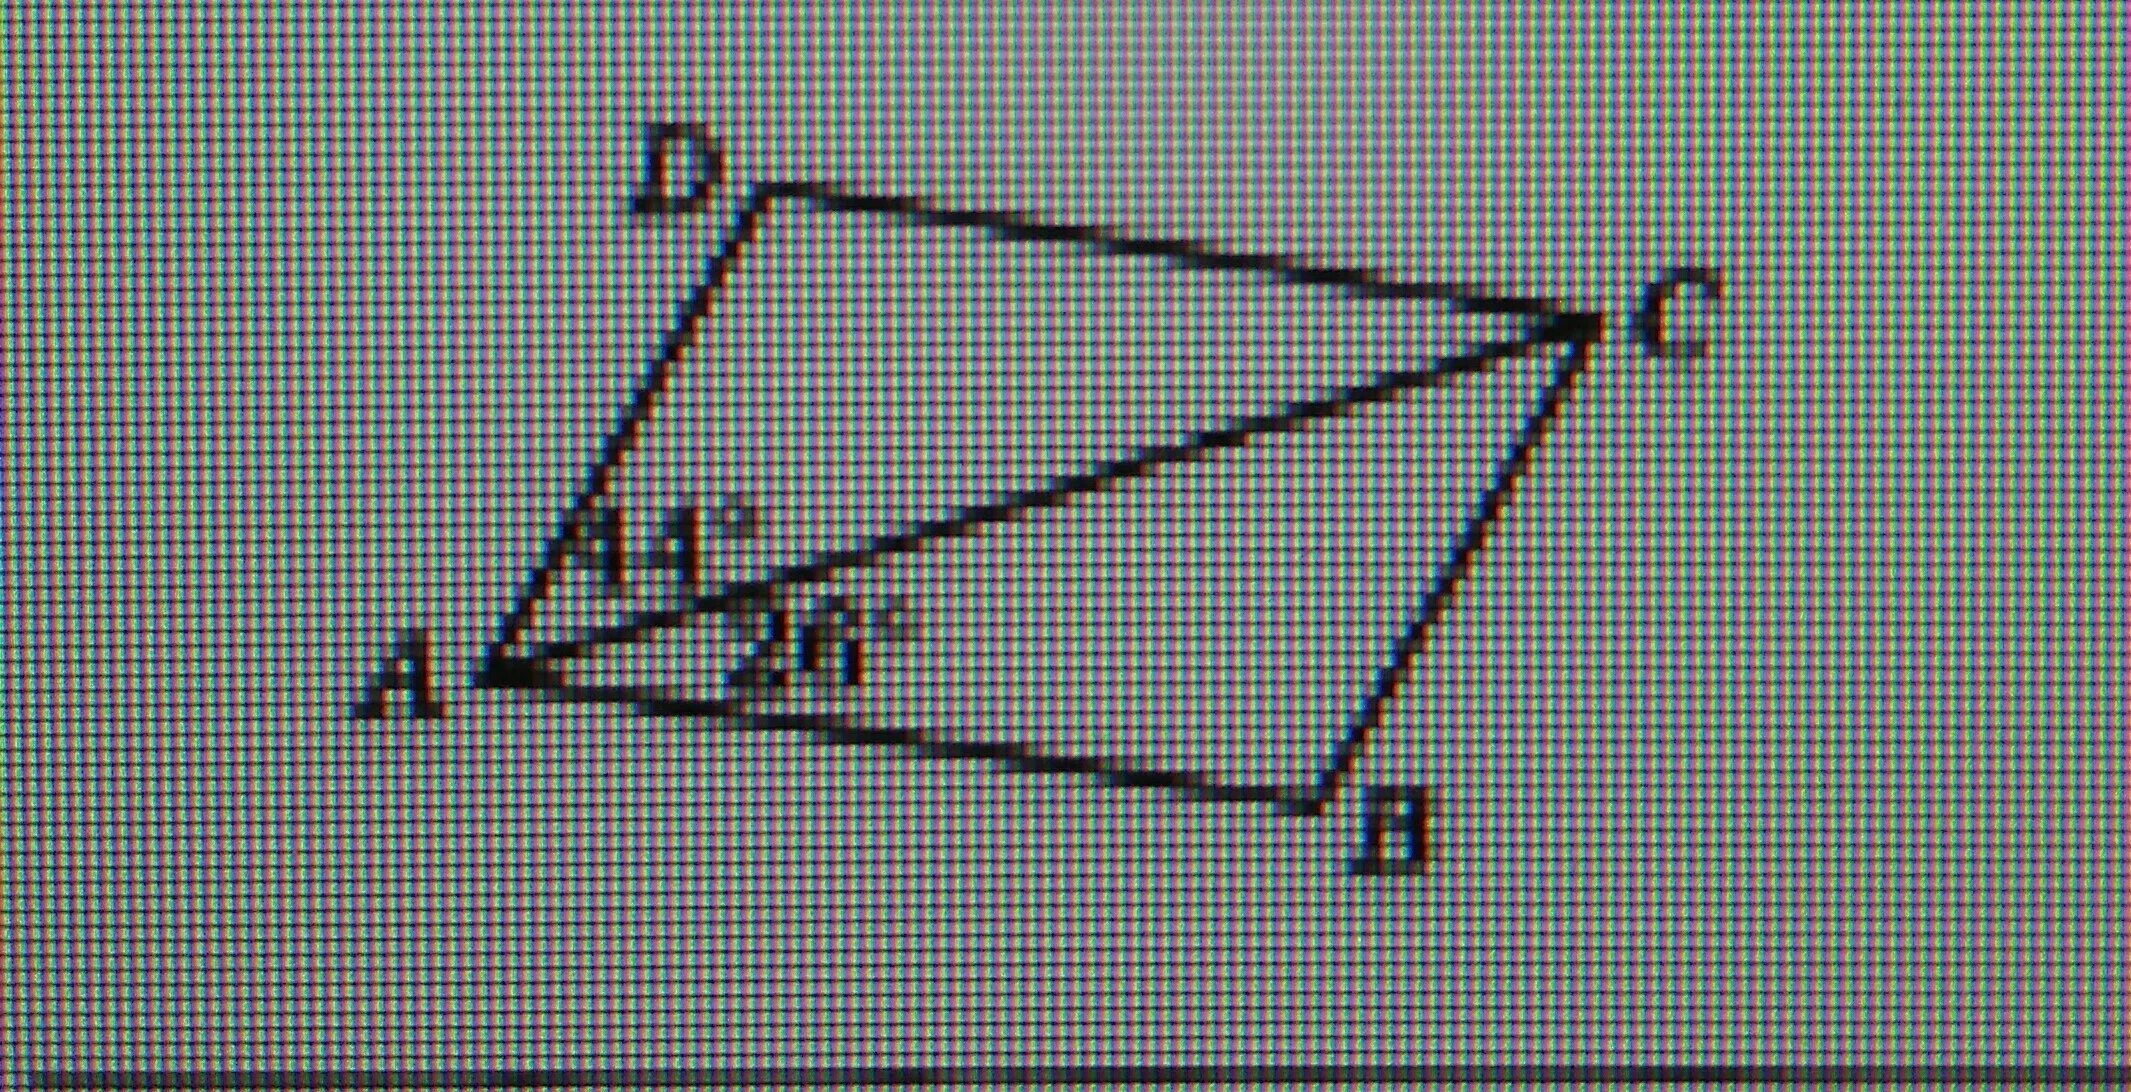 Через сторону ad четырехугольника abcd. Четырехугольник в предметах. На рисунке четырехугольник АВСД стороны БС И ад параллельны. На рисунке в четырехугольнике ABCD стороны BC И ad параллельны. В четырёхугольнике ABCD BC параллельно ad.